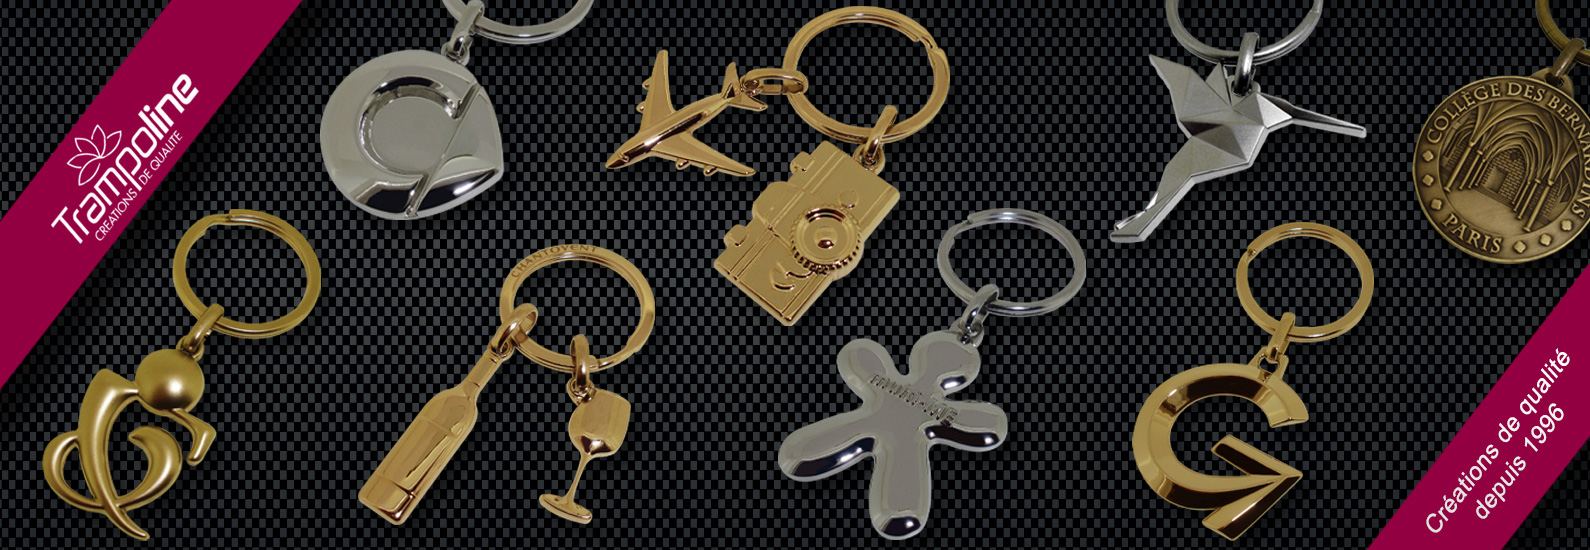 Porte-clés PVC 3D, porte clés métal et pin's sur-mesure, Portofolio